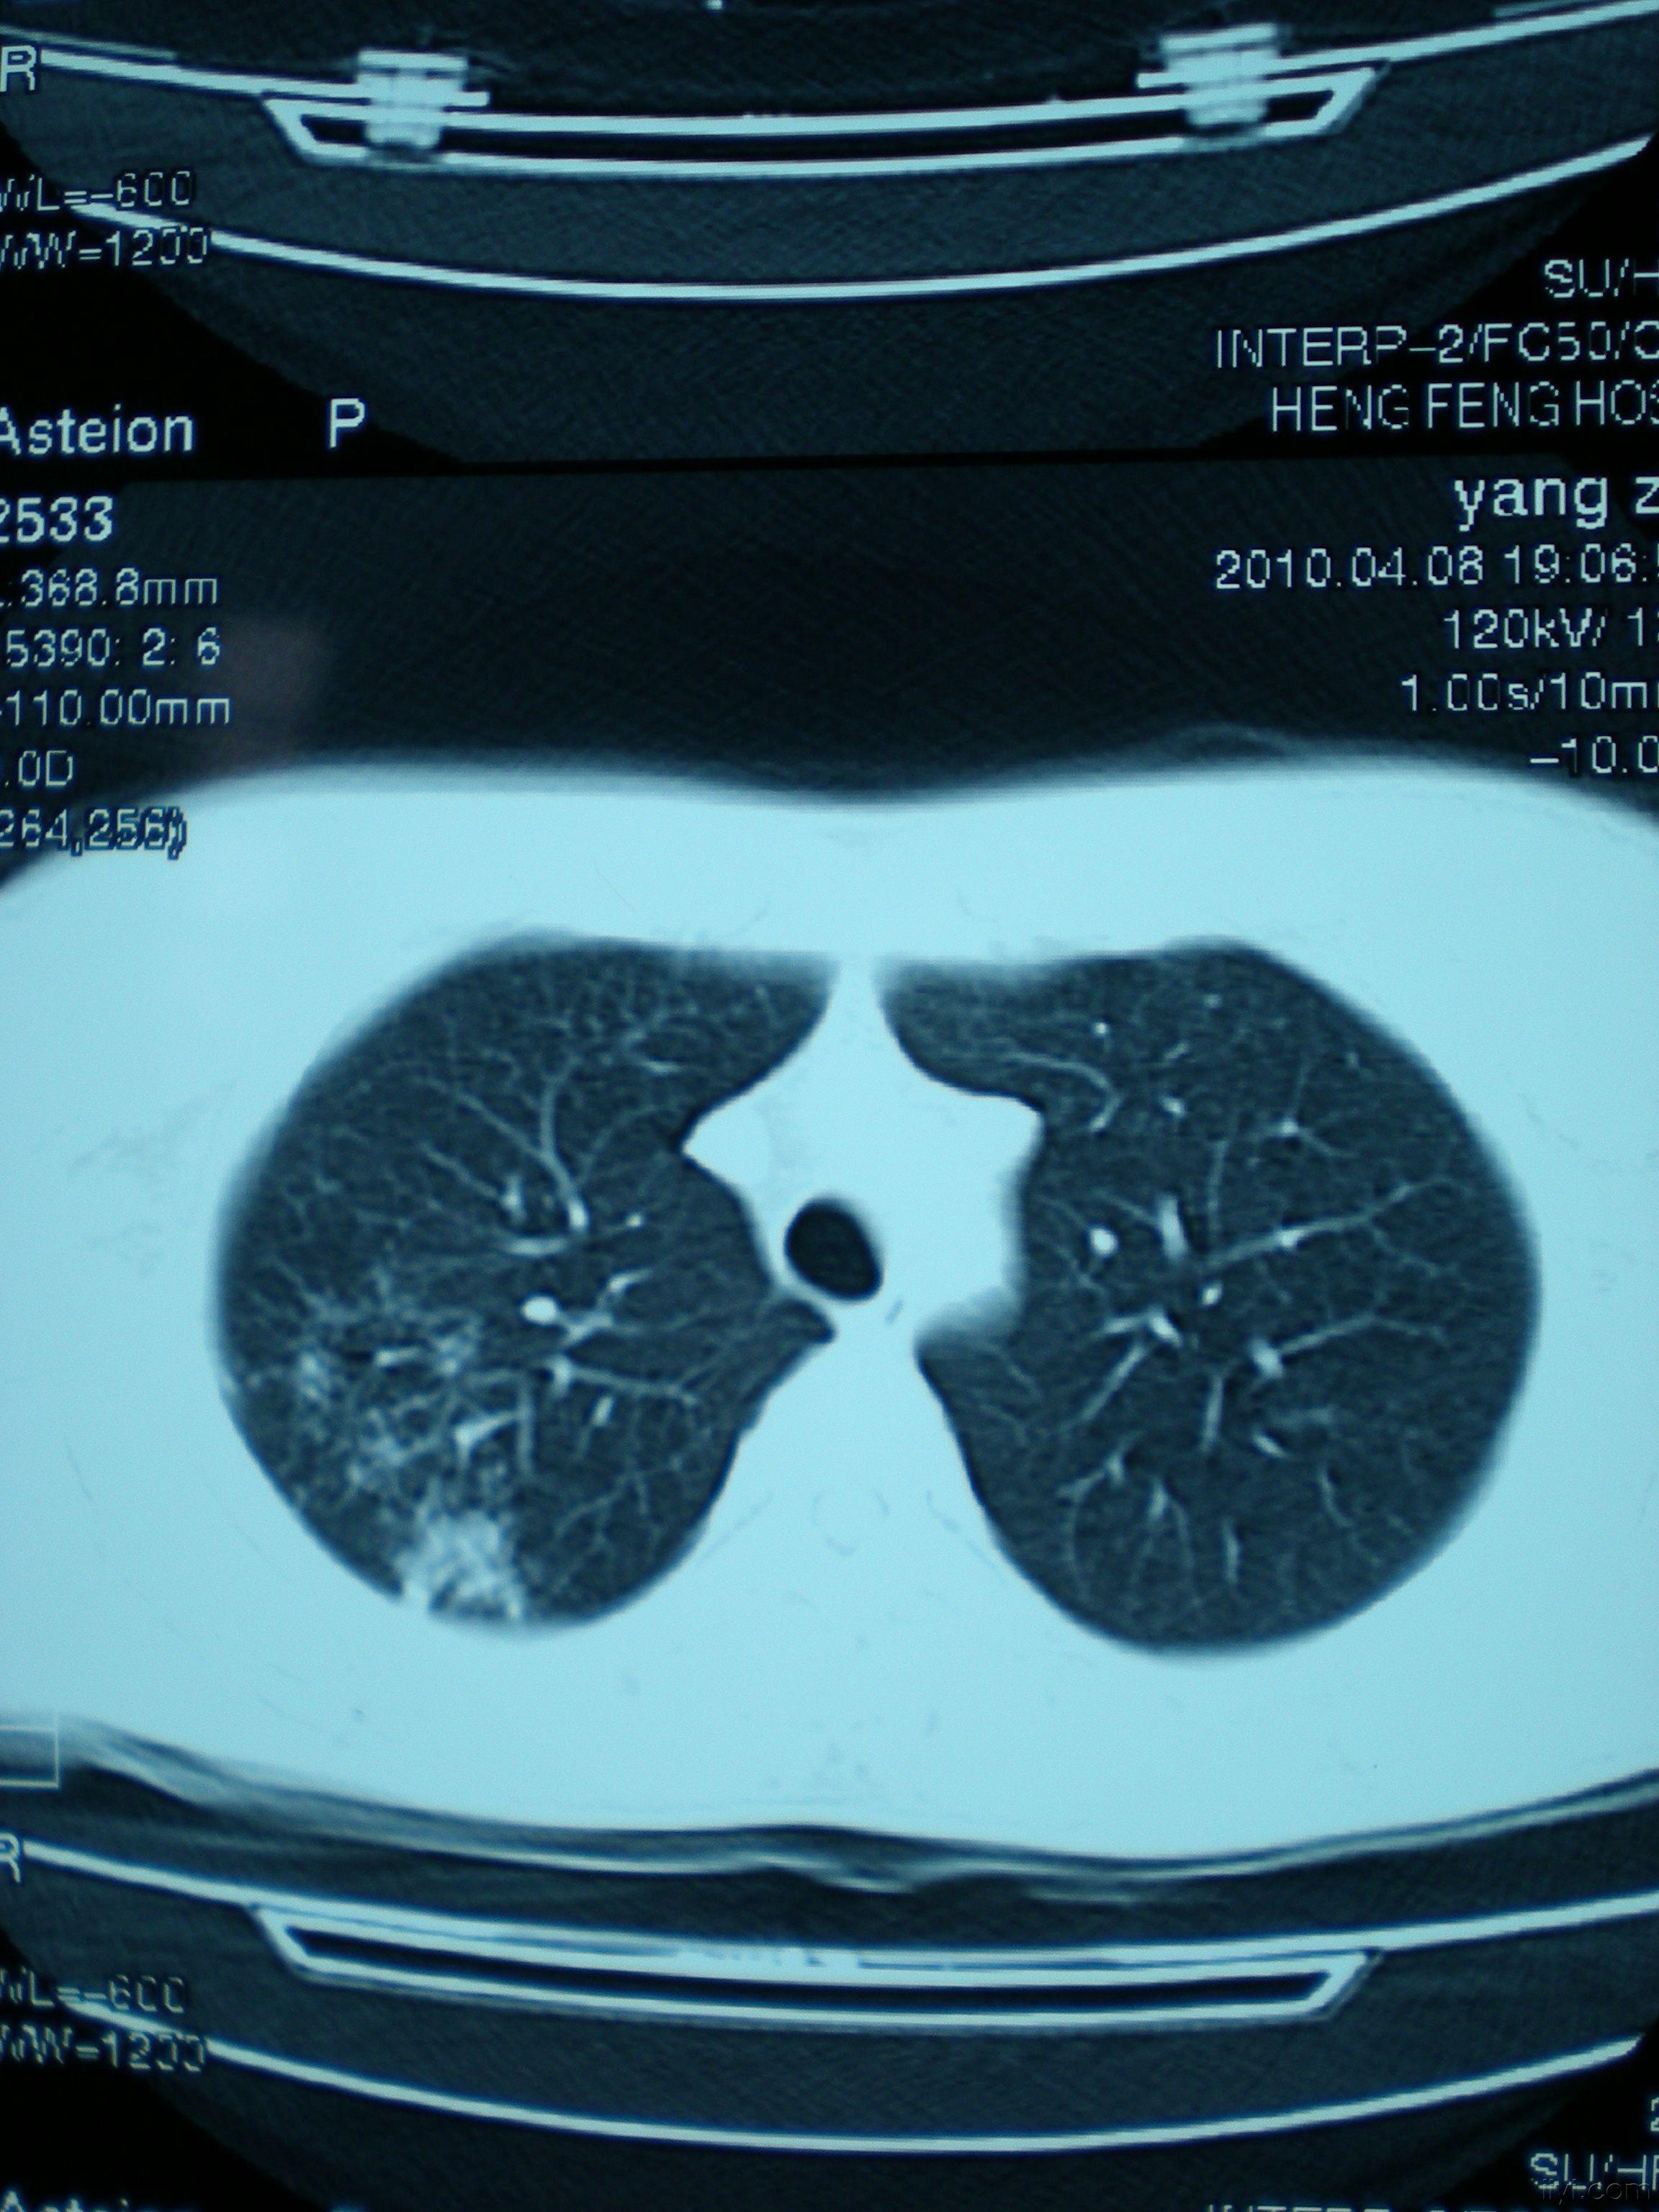 肺结核的影像诊断练习（已补链接）。 - 影像医学和核医学讨论版 -丁香园论坛